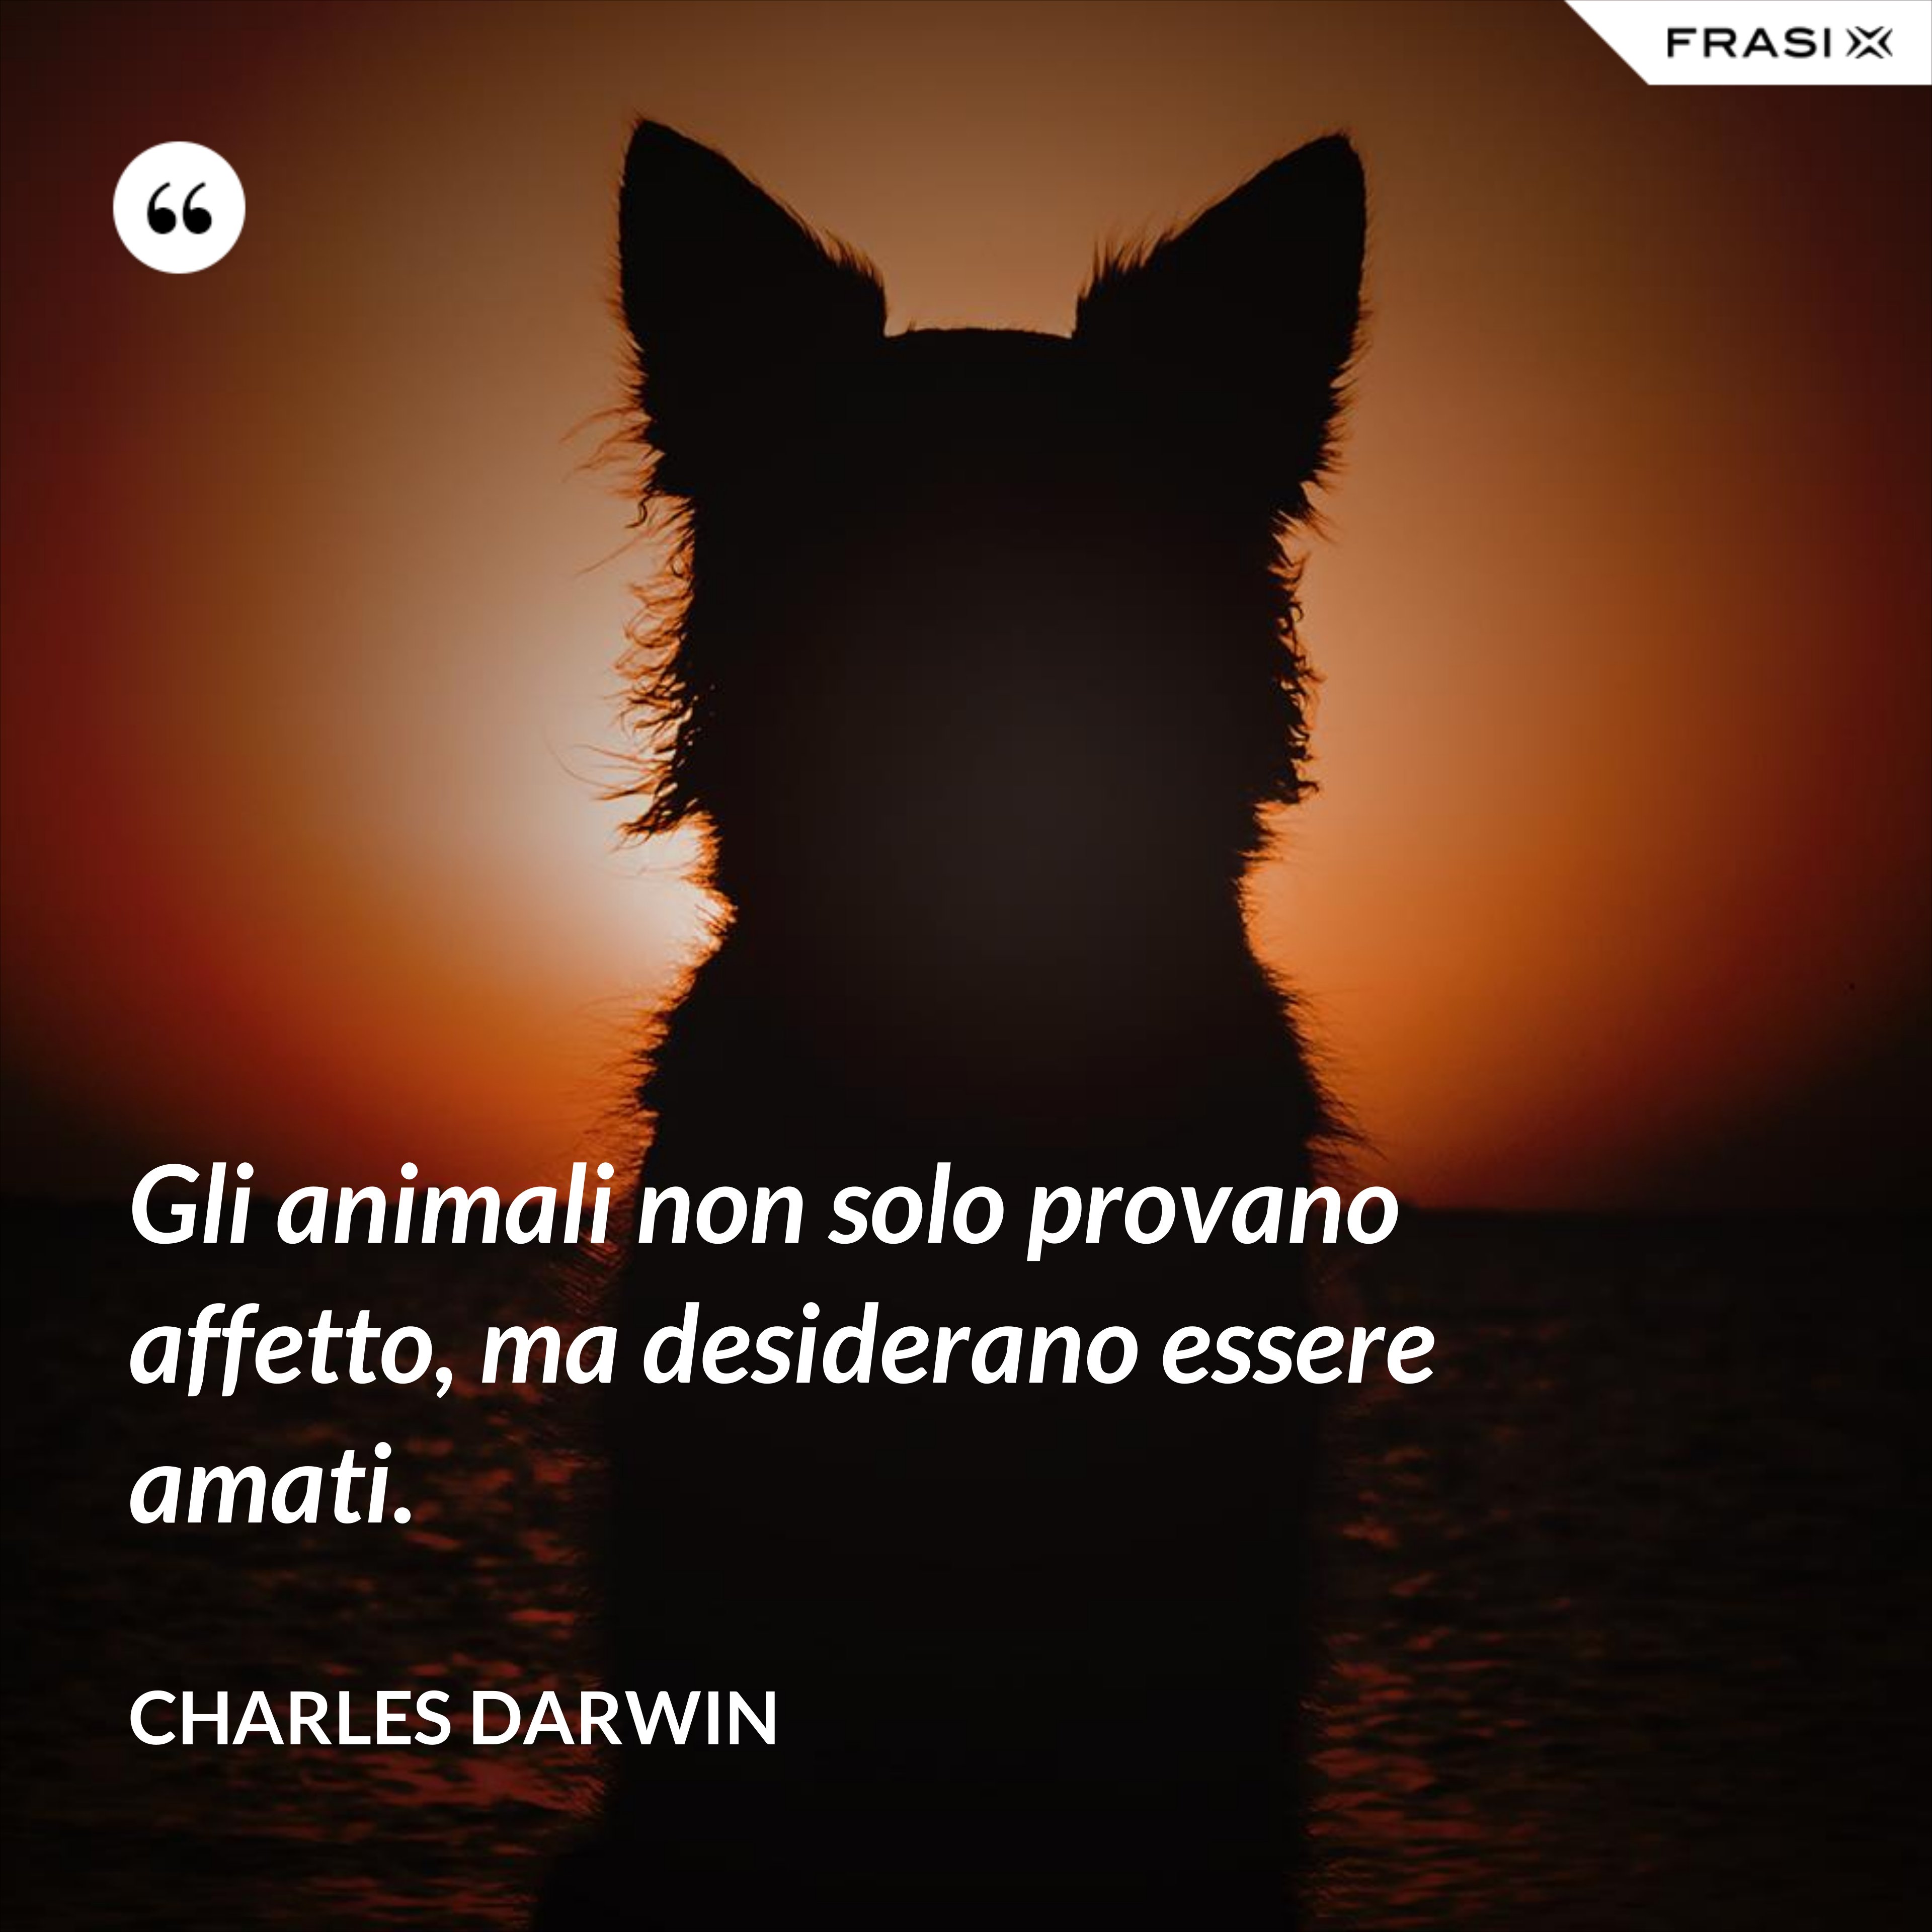 Gli animali non solo provano affetto, ma desiderano essere amati. - Charles Darwin